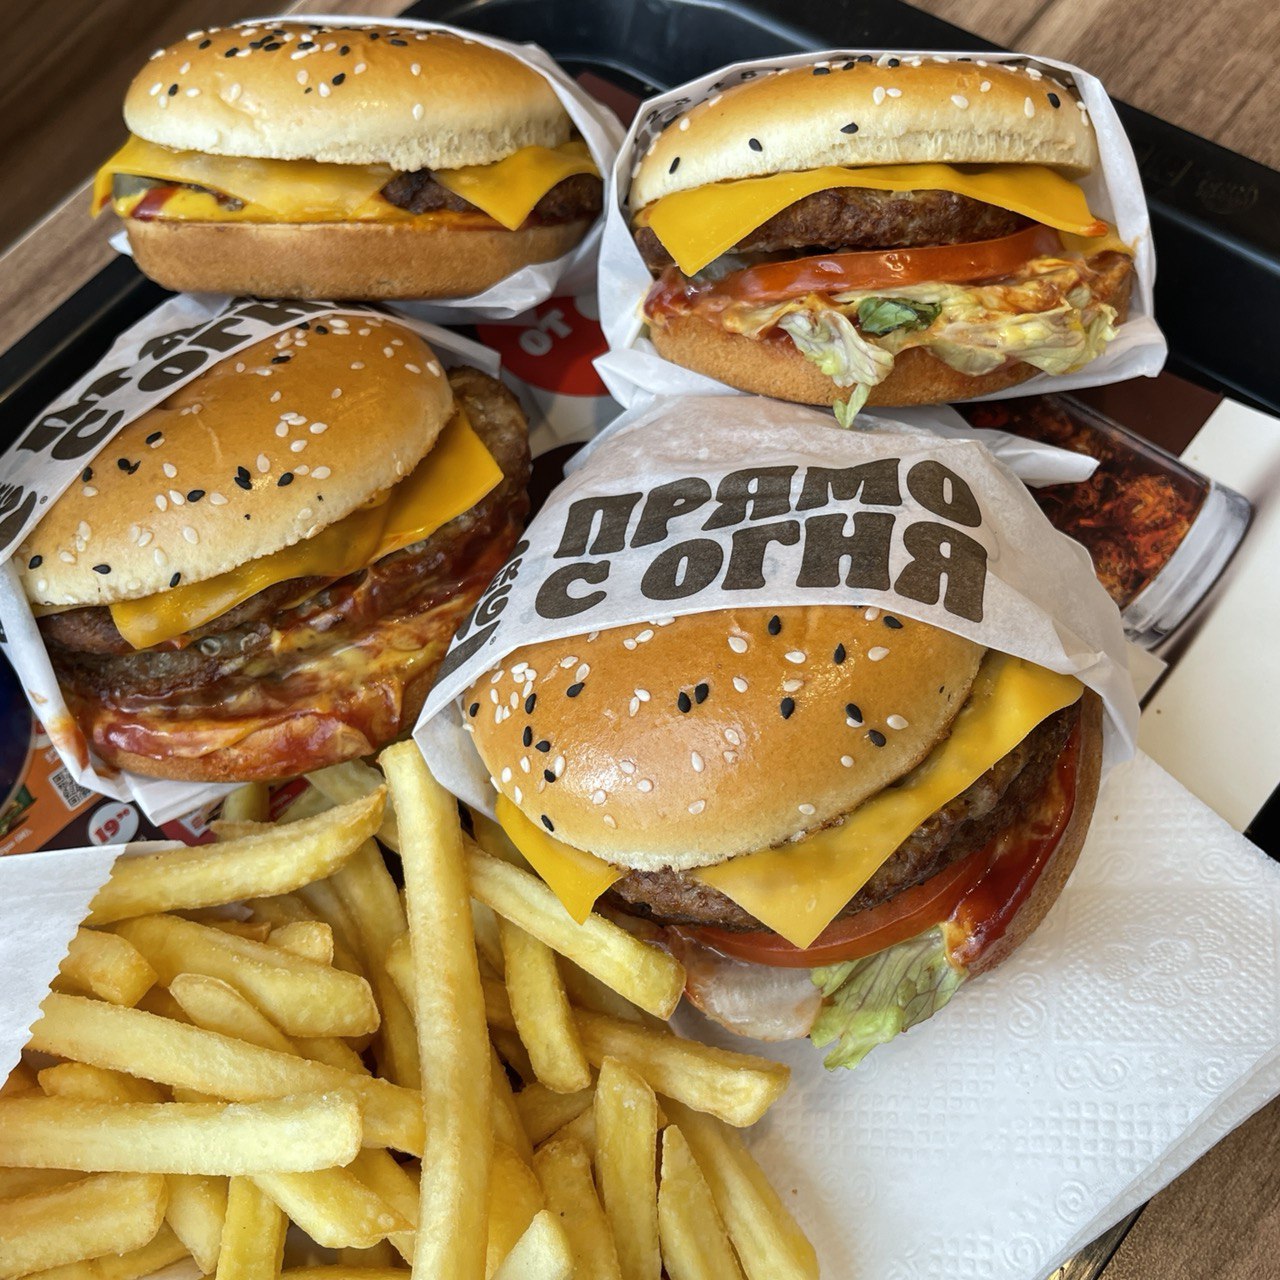 В Burger King в Гродно появились новые бургеры с говядиной и курицей